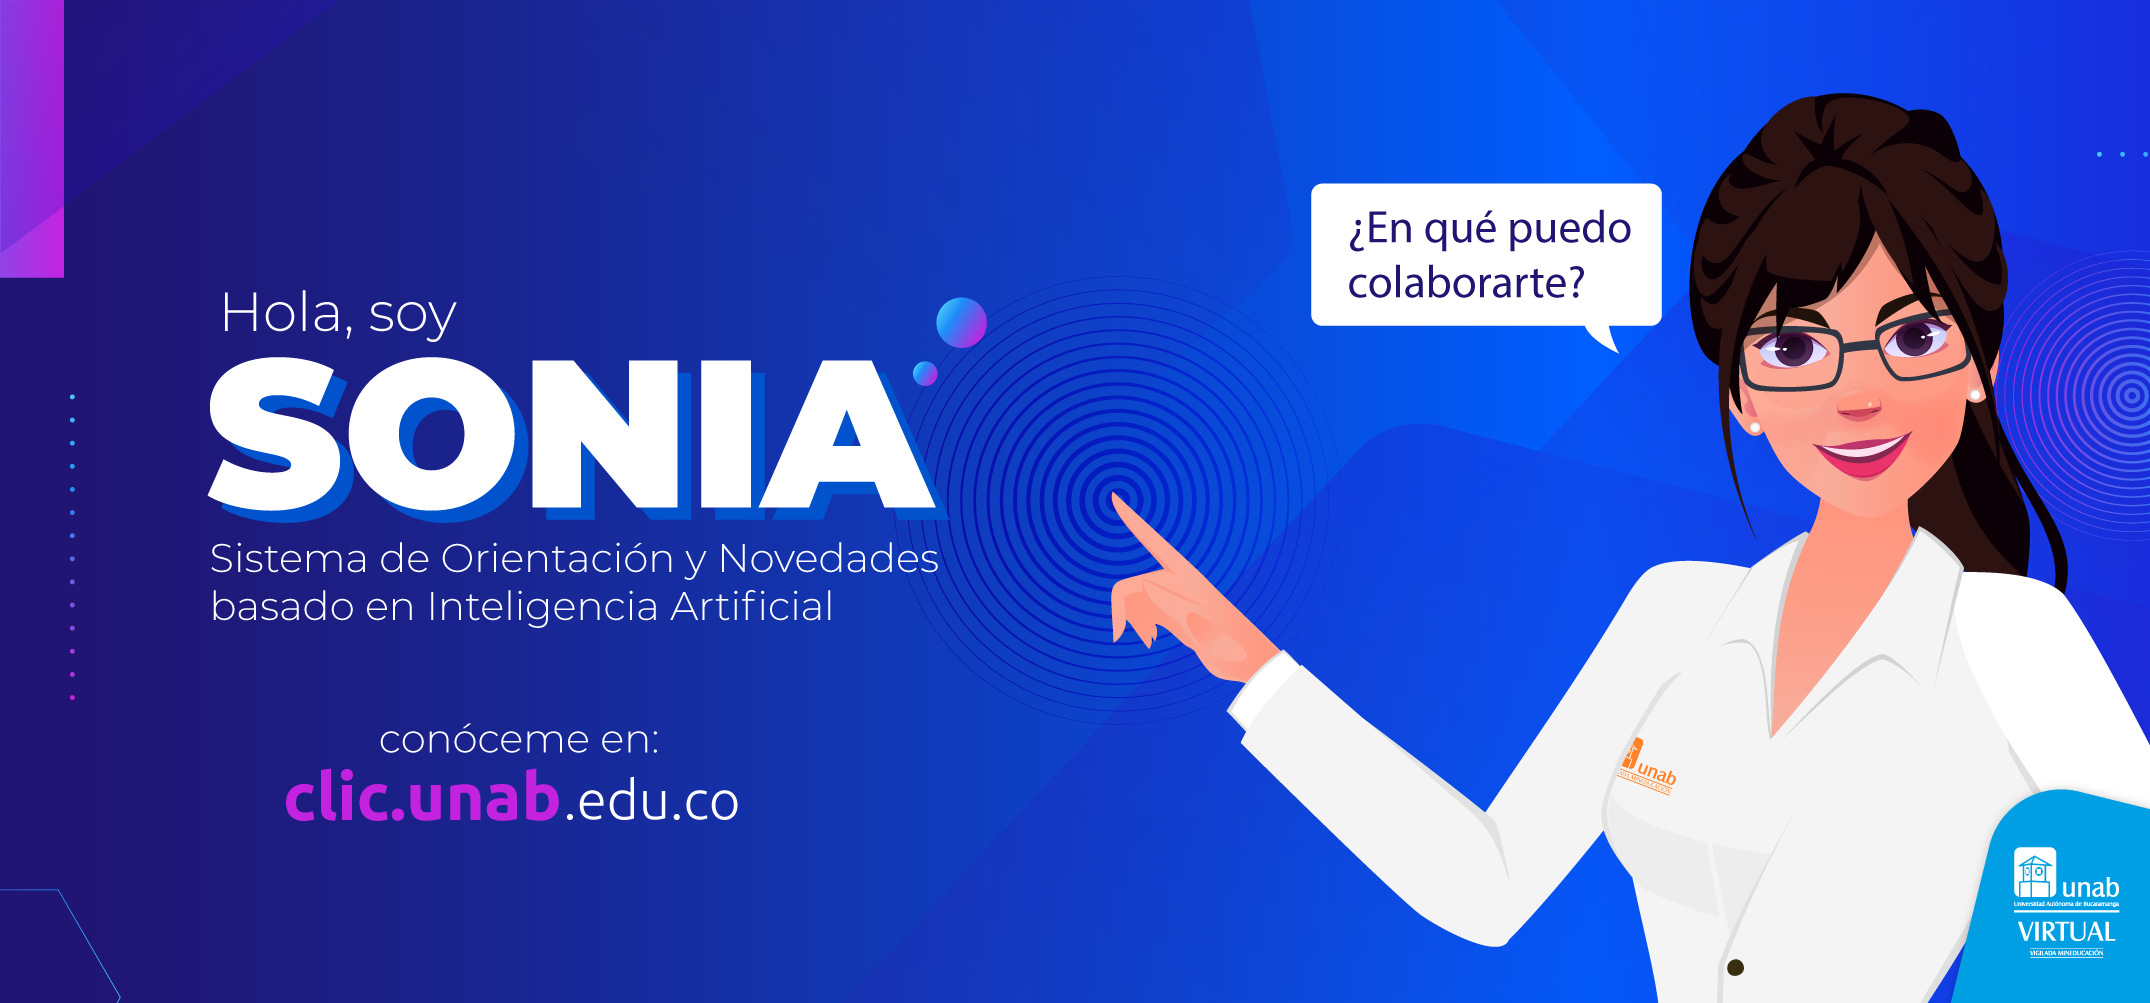 Sonia es el Sistema de orientación y novedades basado en inteligencia Artificial conócela en clic.unab.edu.co